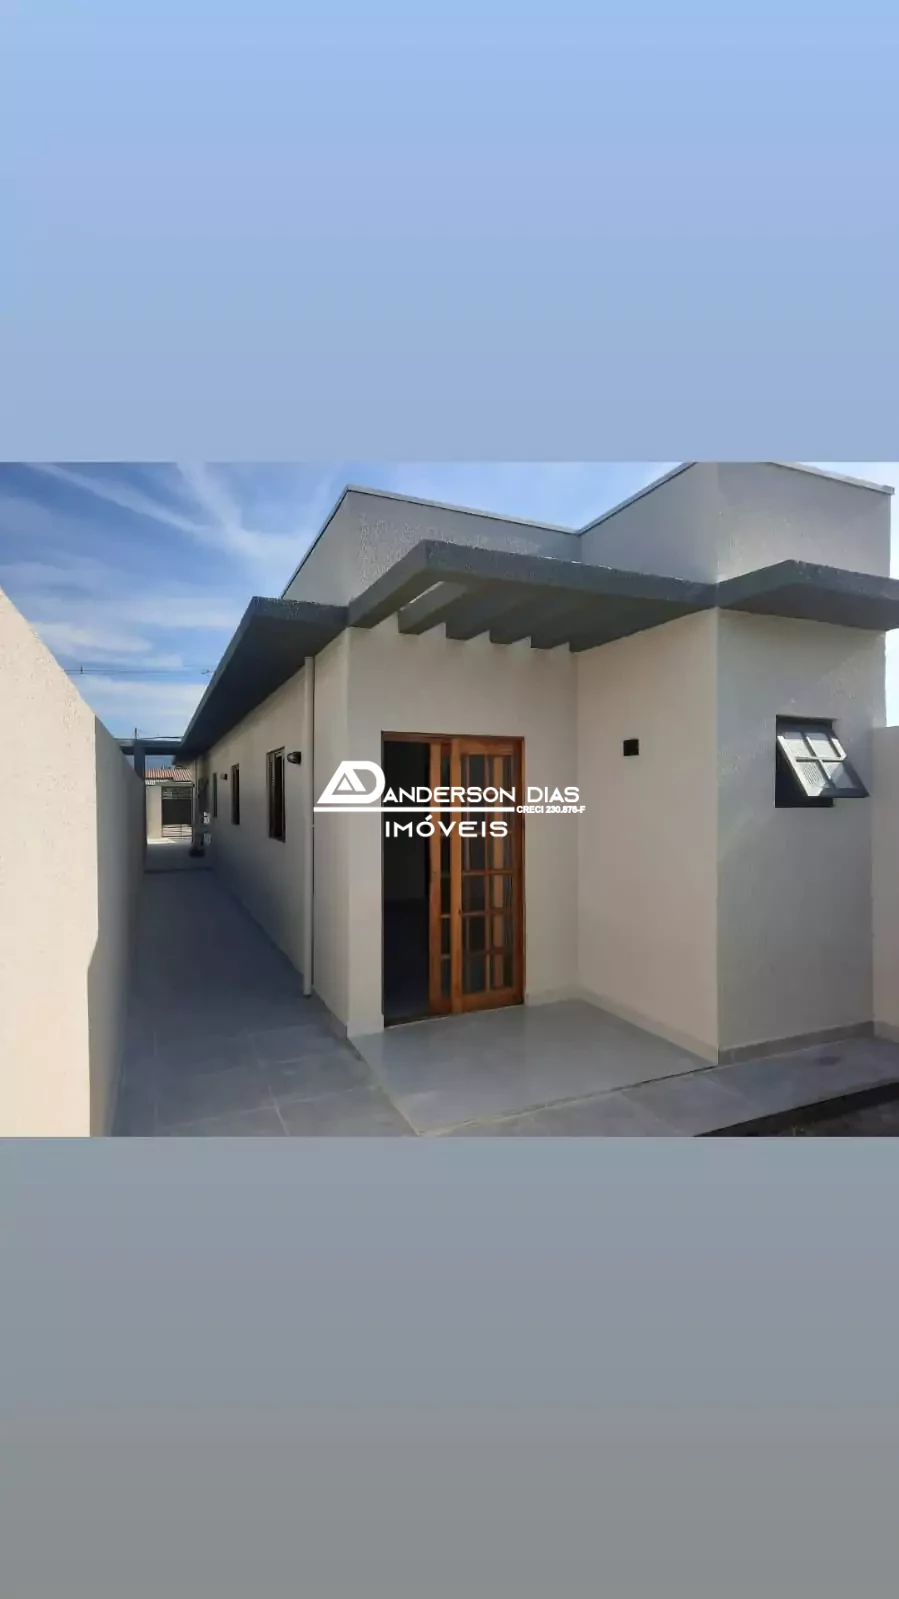 Casa recém construída á venda com 3 dormitórios, 1 suíte no Bairro Golfinho-  Caraguatatuba-SP